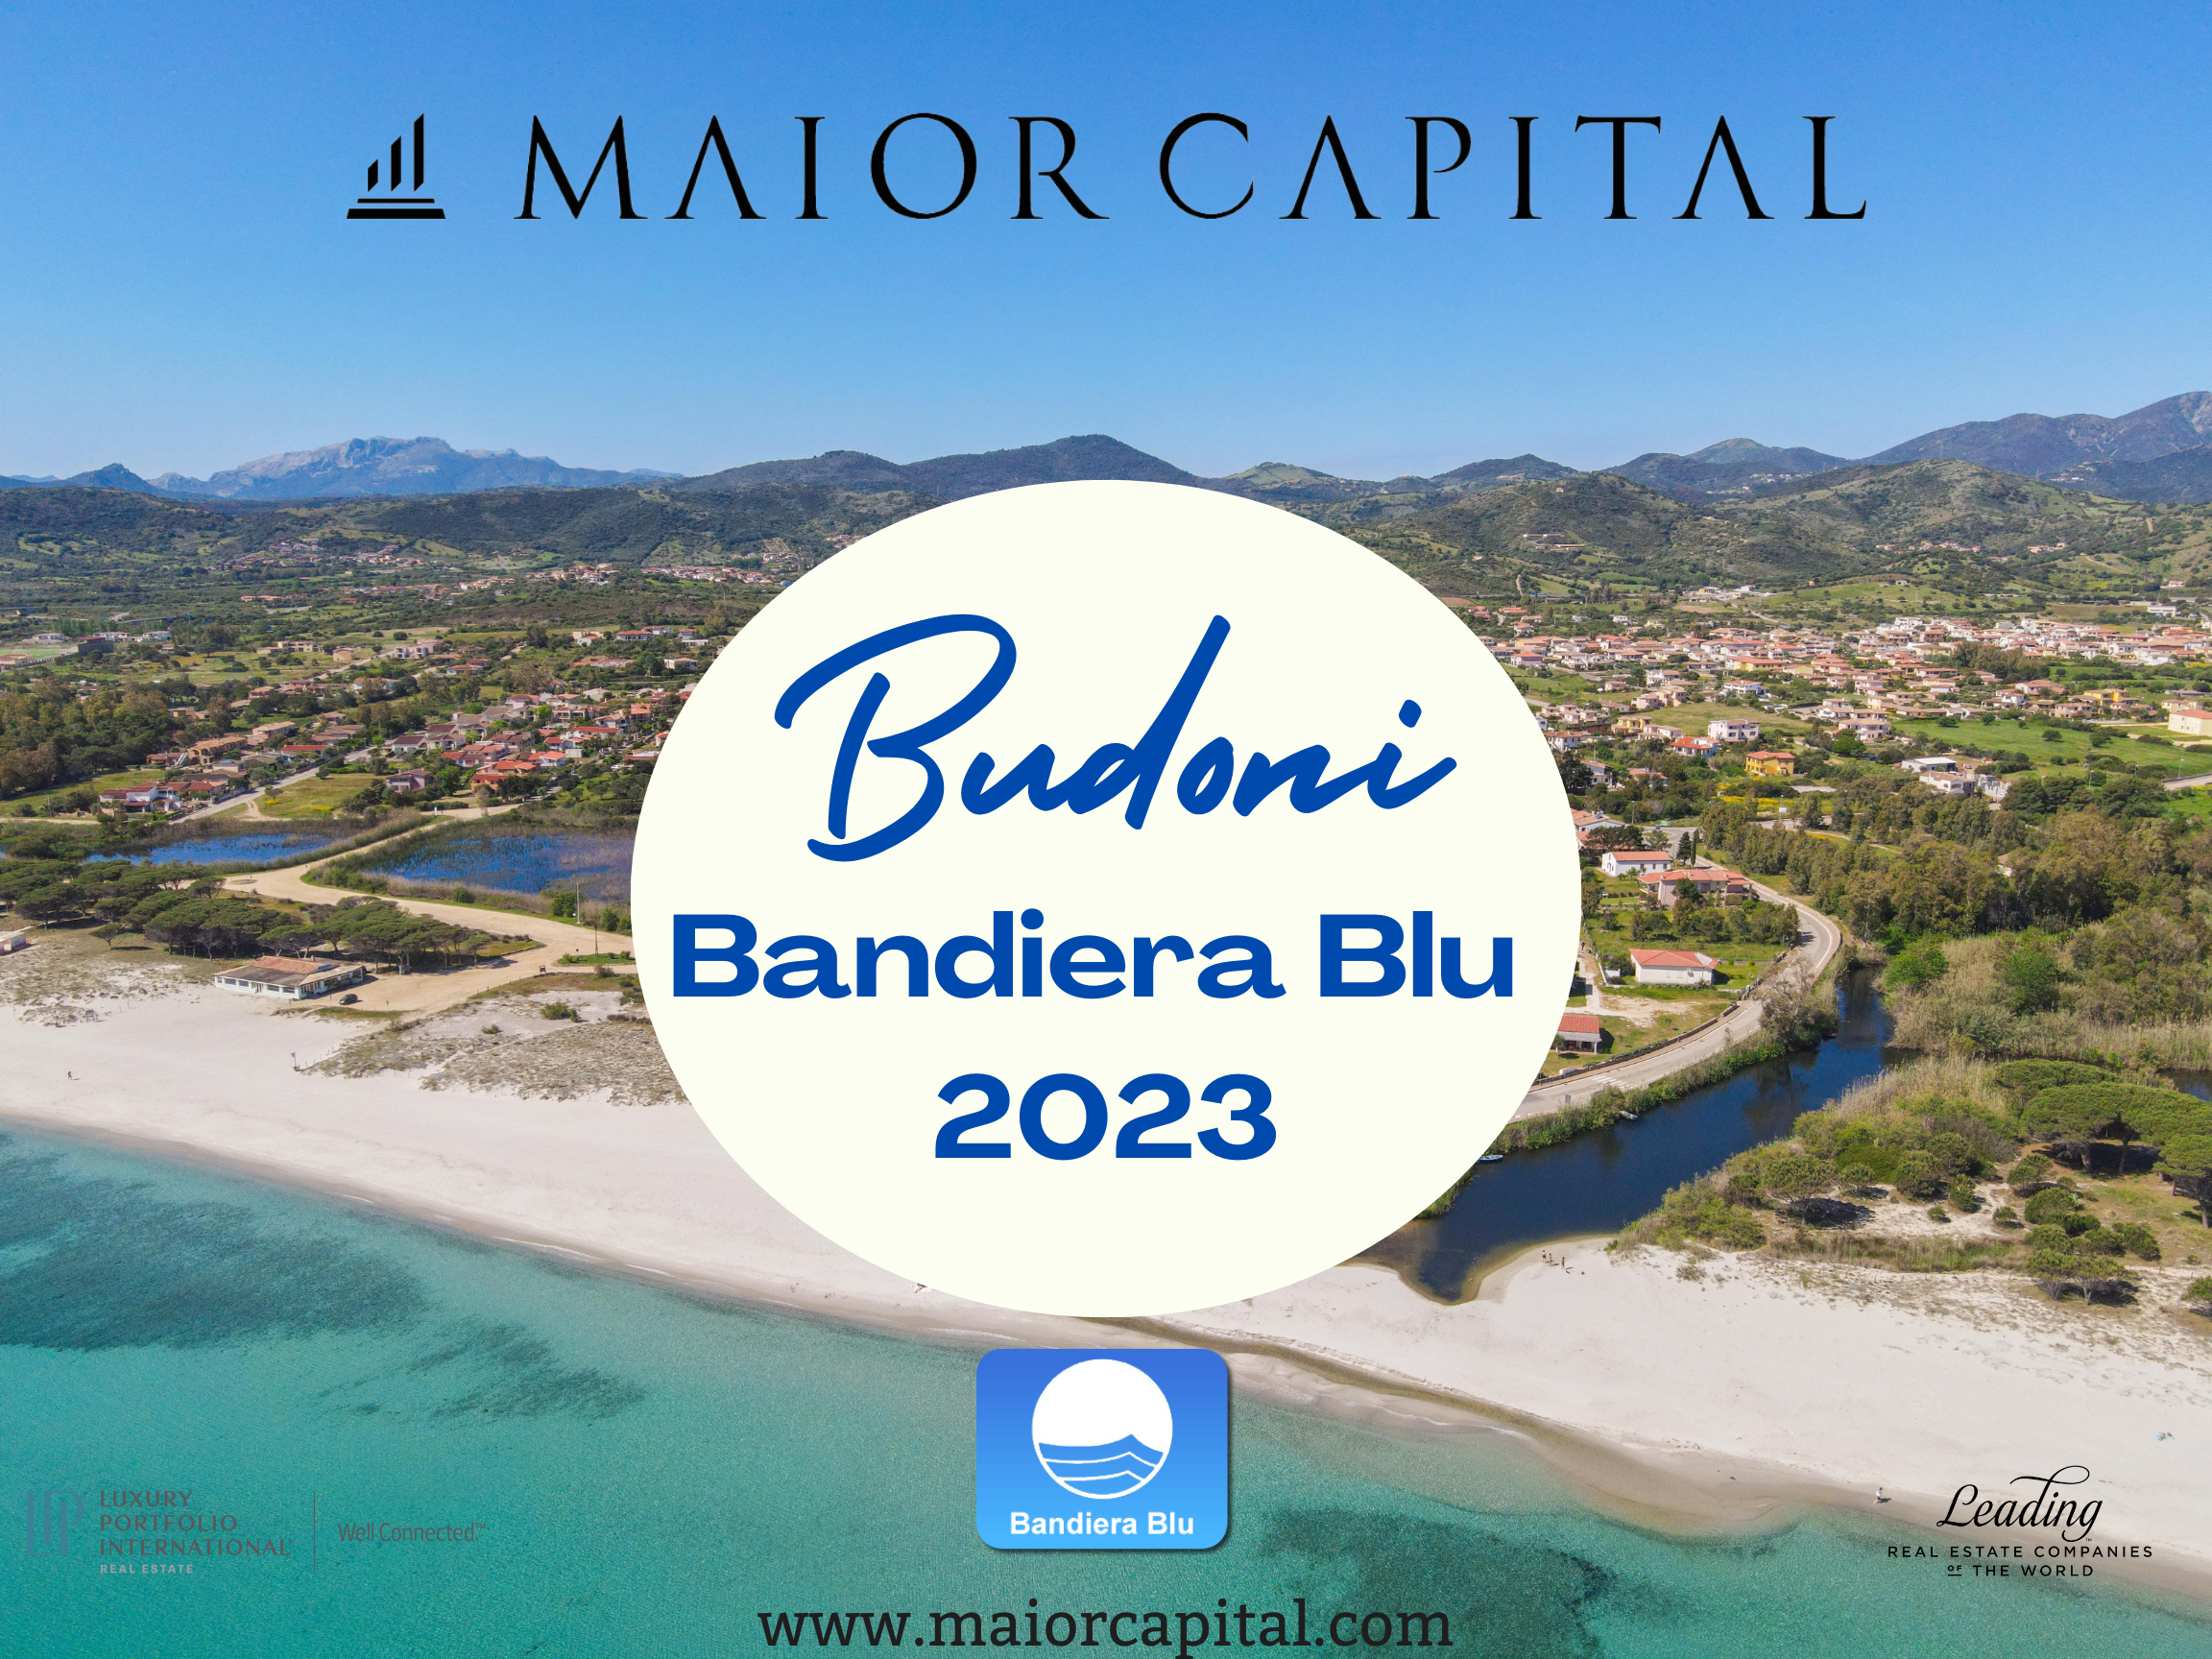 Budoni: Bandiera Blu 2023